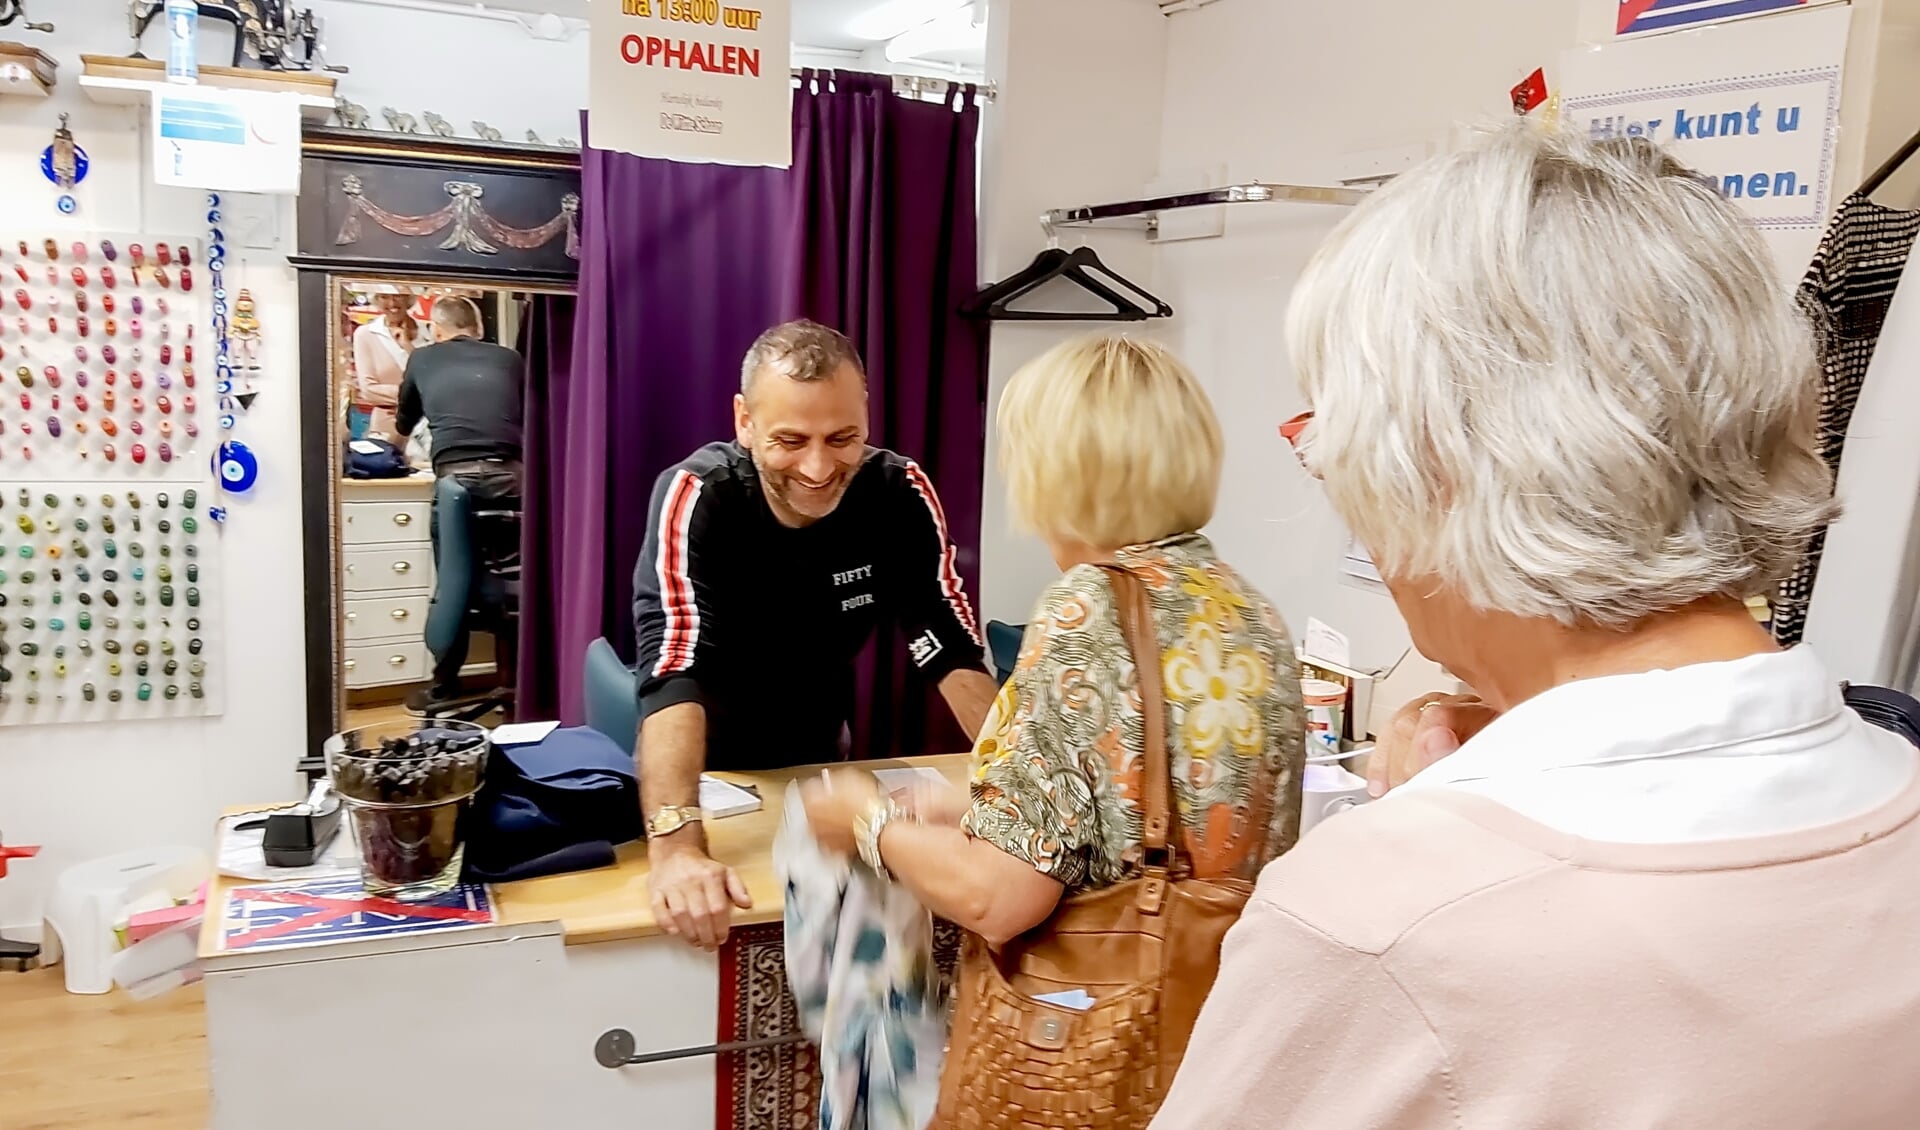 Umit Arslan helpt klanten in zijn naaiatelier De Witte Schaar in winkelcentrum Winkelhof.